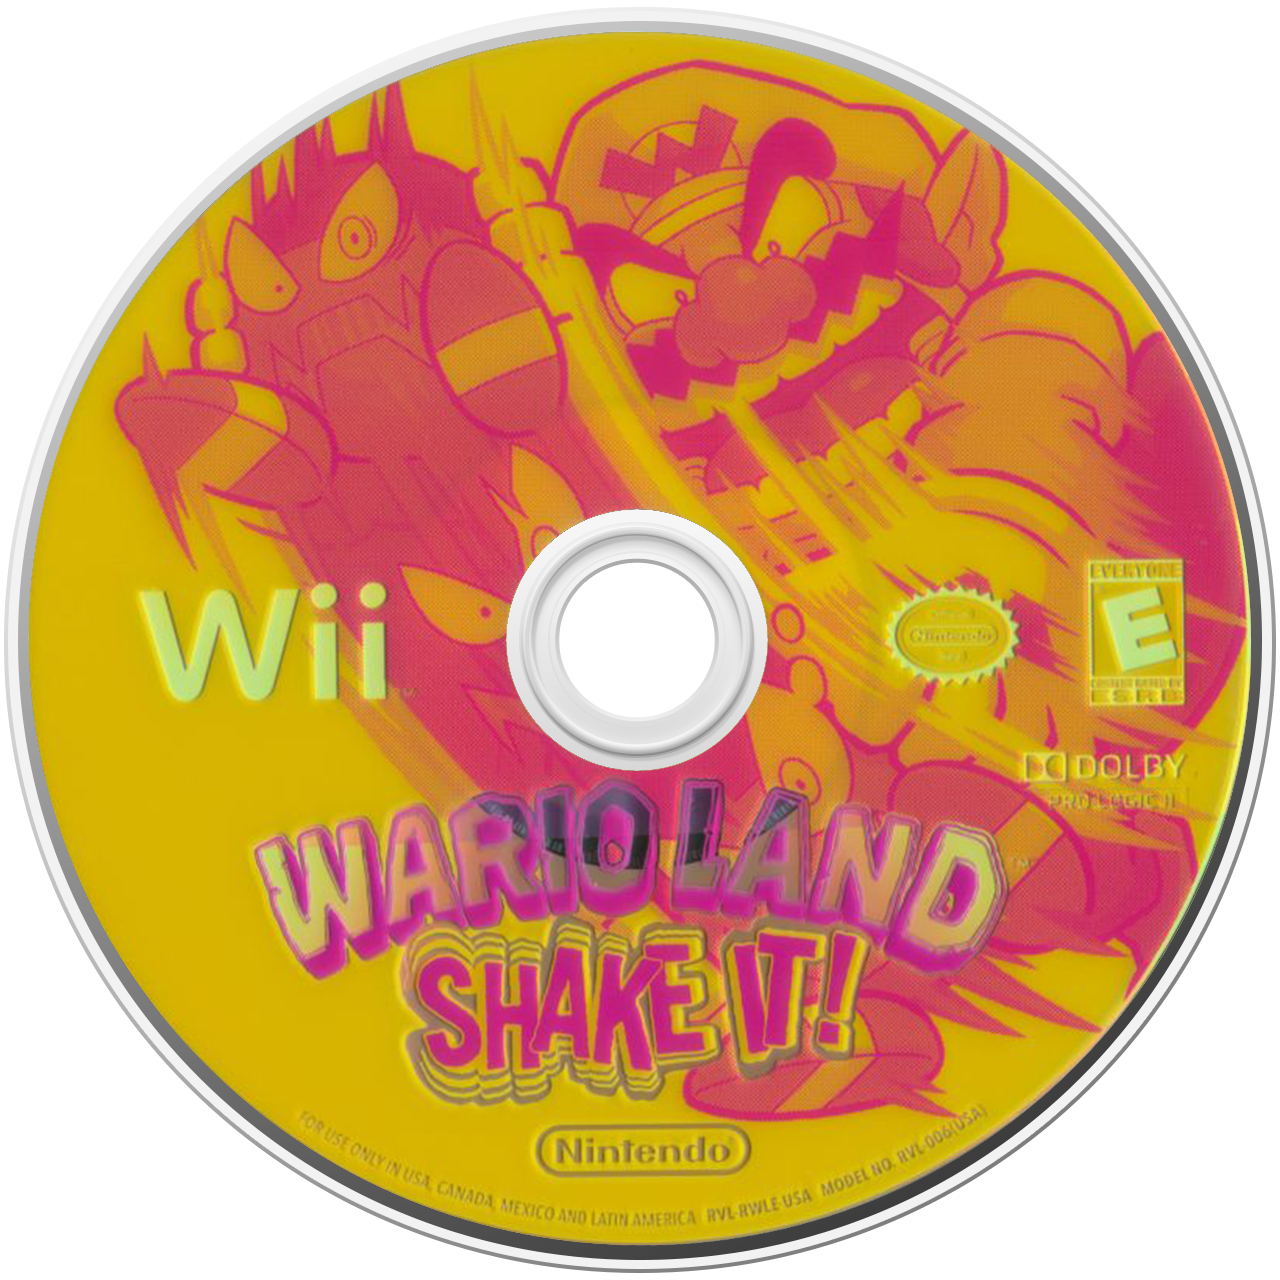 Wario Land: Shake It! - Nintendo Wii Game